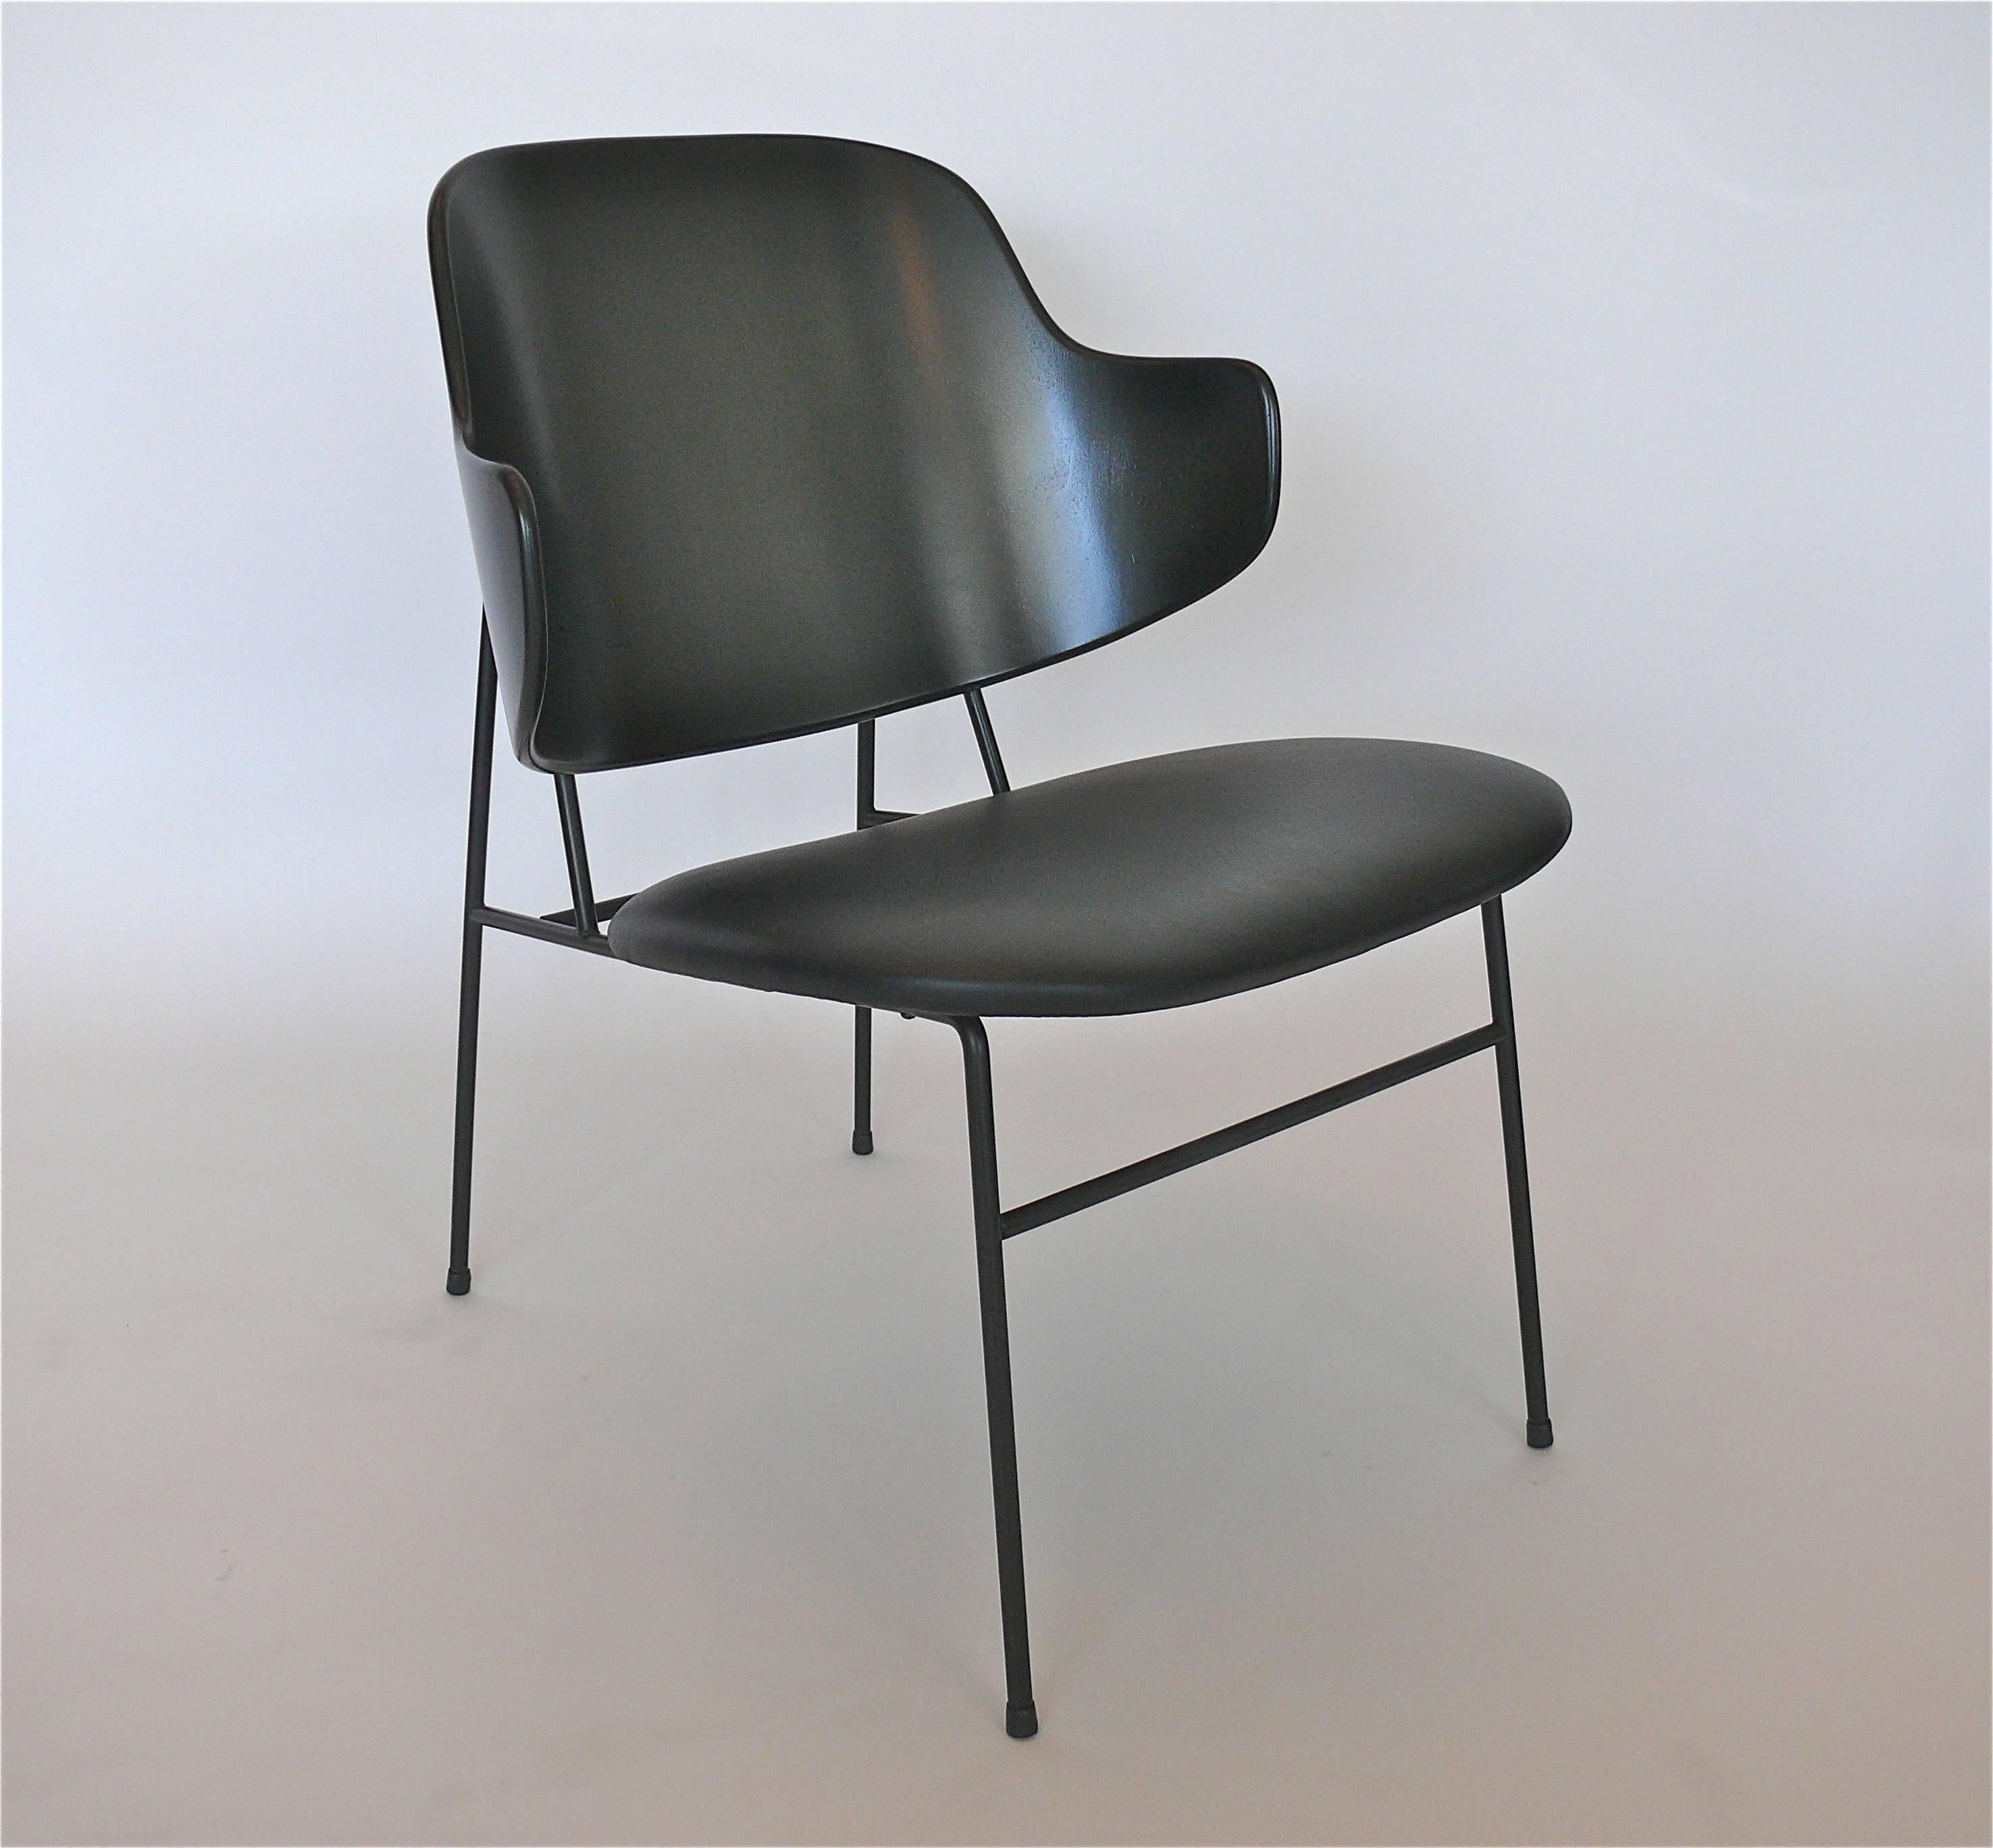 Mid-20th Century Kofod-Larsen Chairs